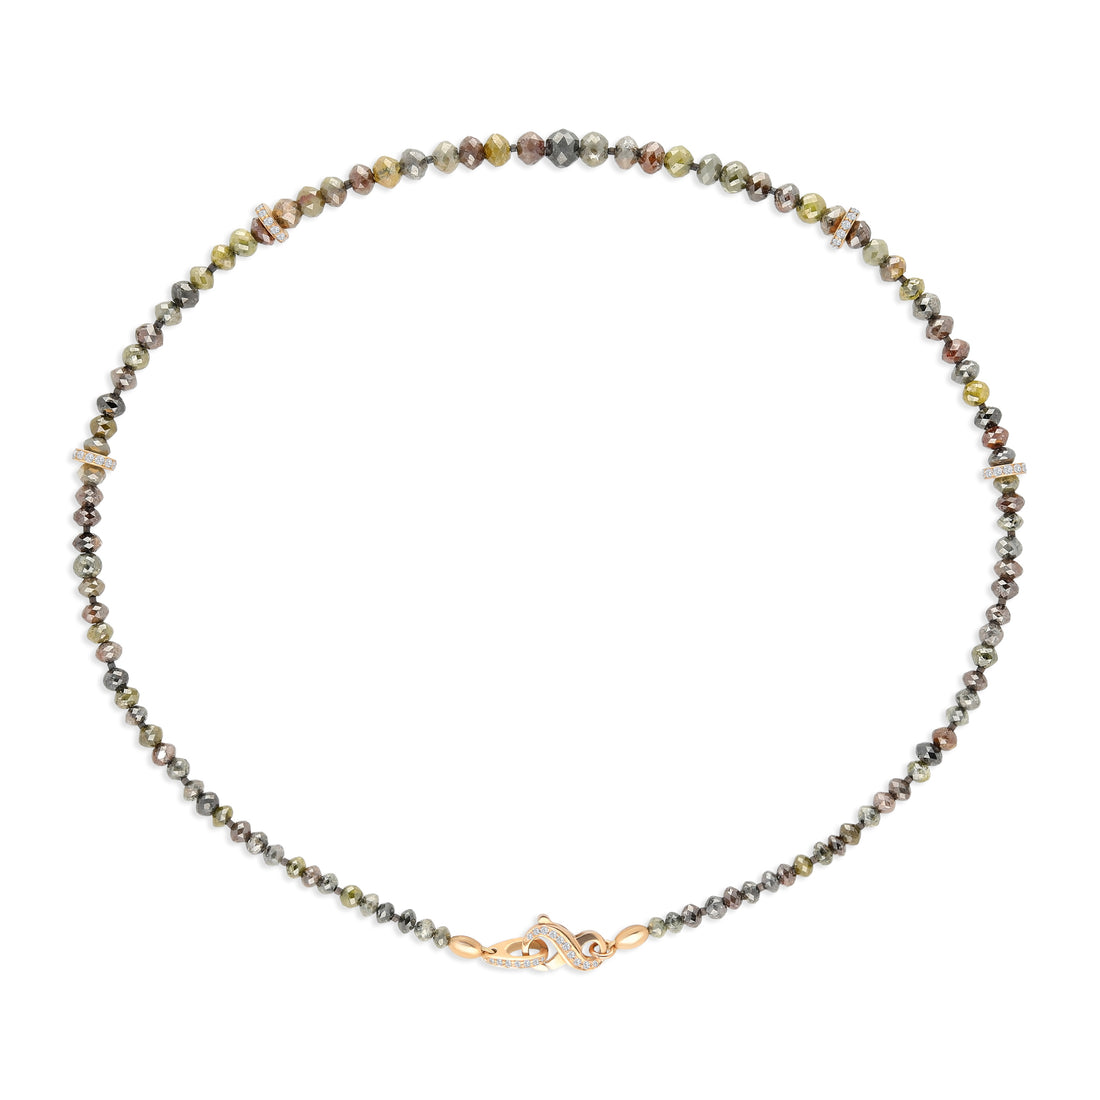 Multicolored Diamond Beaded Necklace - 89 Carat